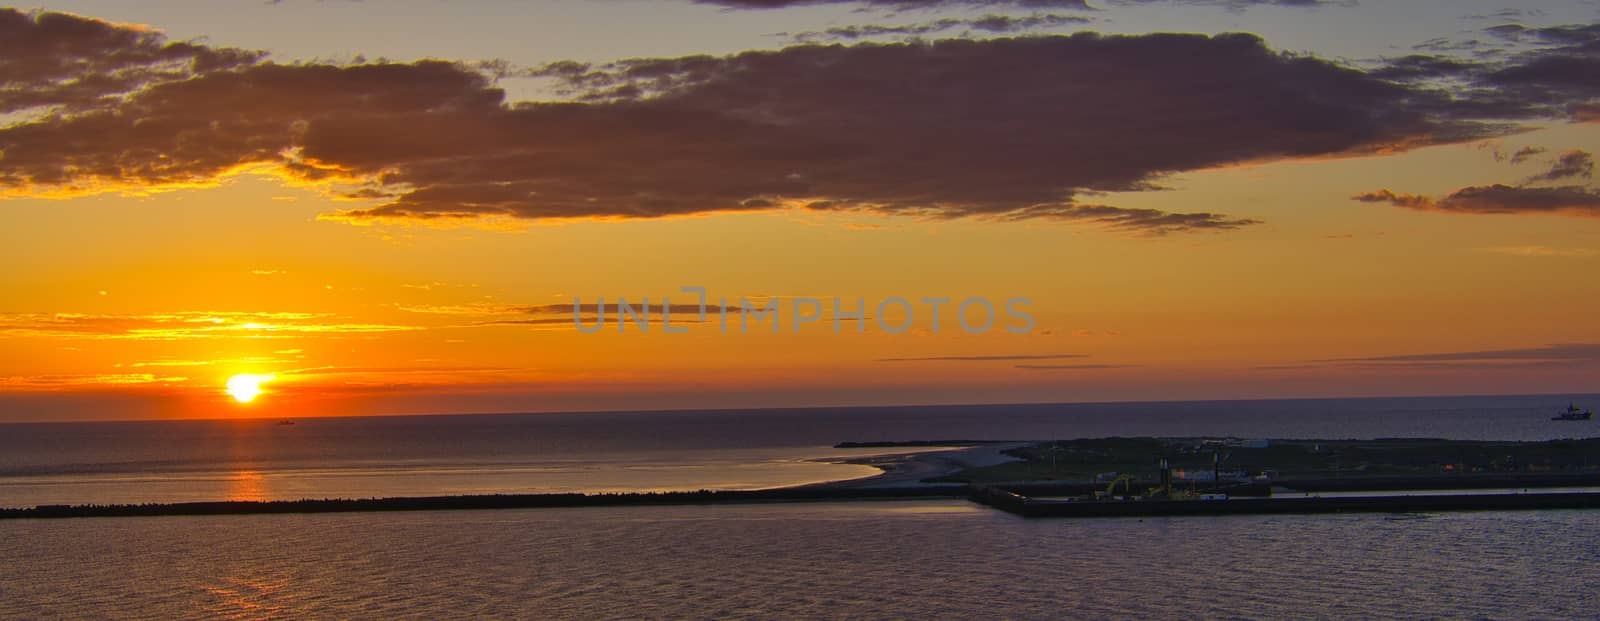 Heligoland - island dune - sunrise by Bullysoft